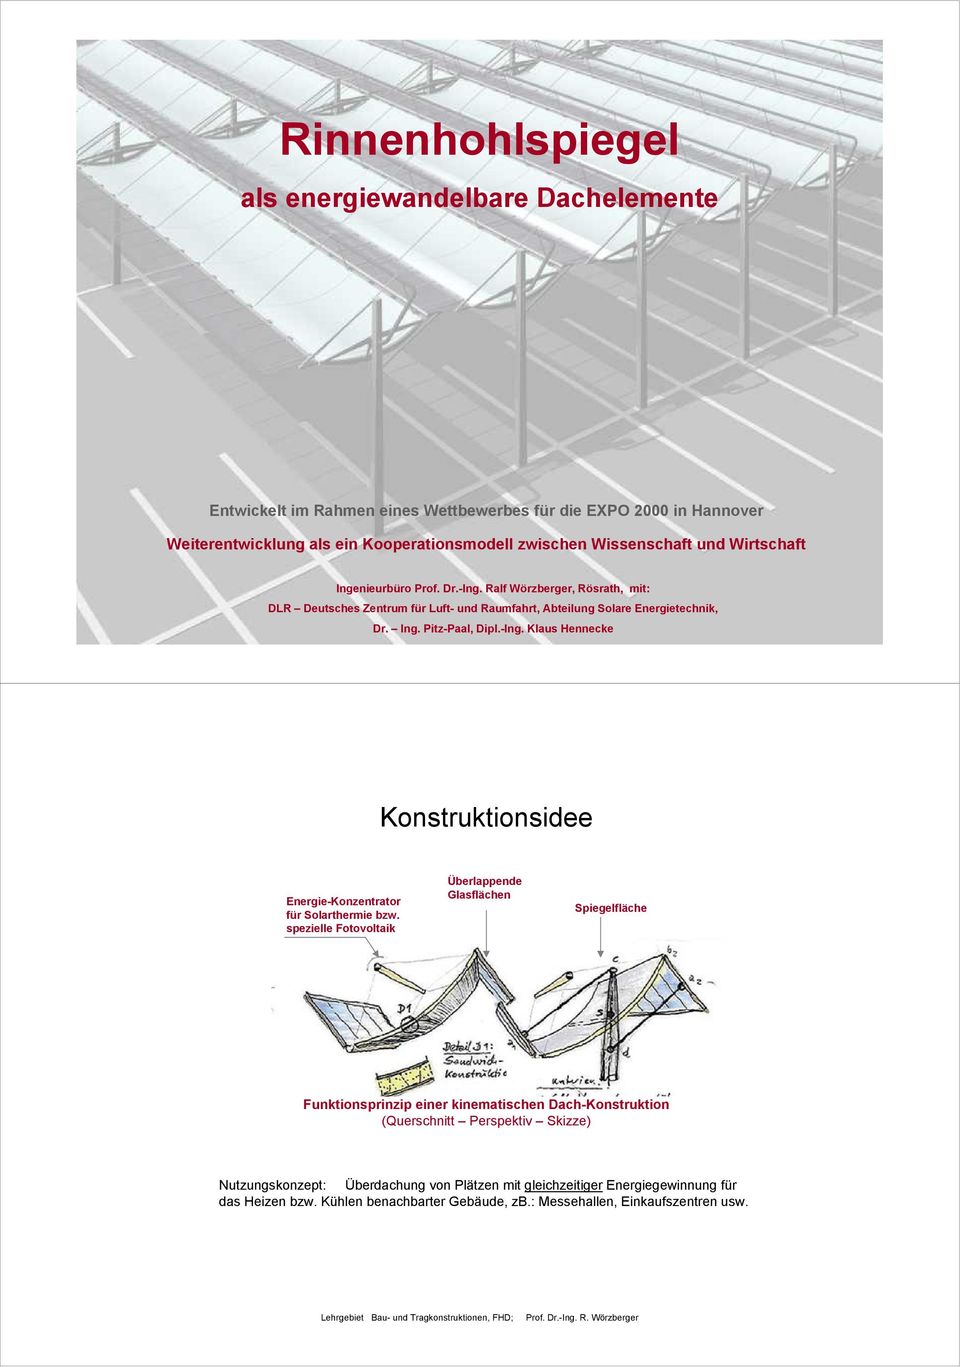 spezielle Fotovoltaik Überlappende Glasflächen Spiegelfläche Funktionsprinzip einer kinematischen Dach-Konstruktion (Querschnitt Perspektiv Skizze) Nutzungskonzept: Überdachung von Plätzen